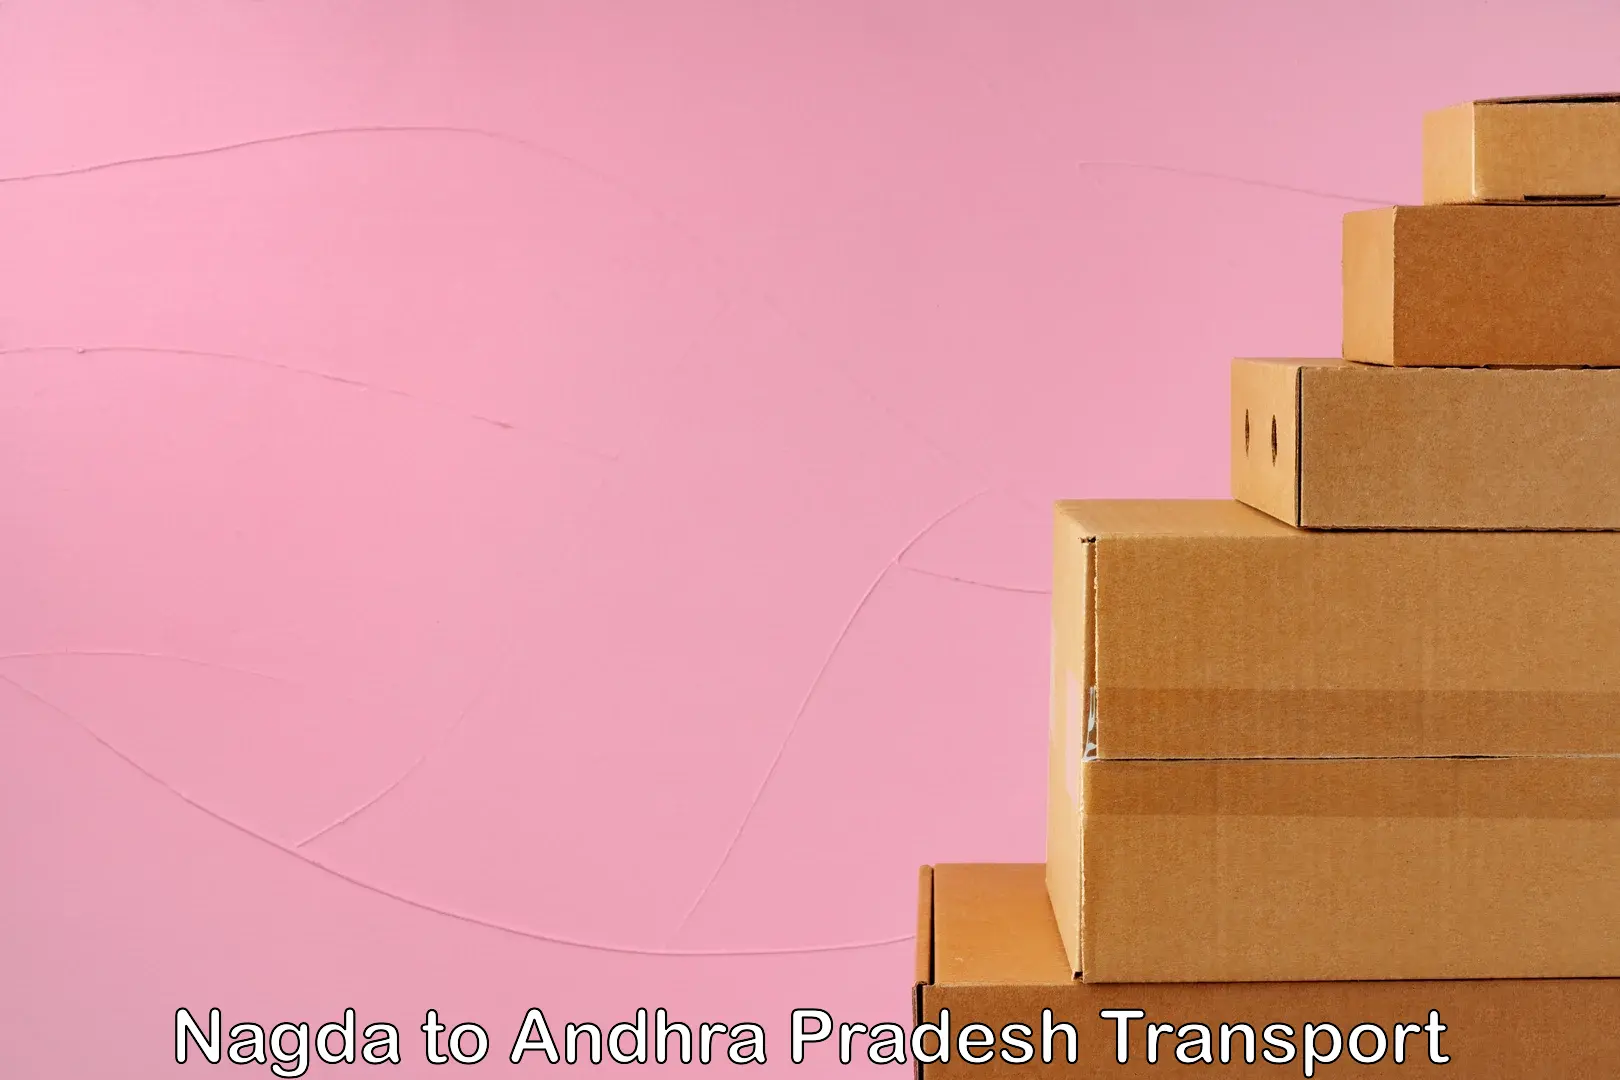 Furniture transport service Nagda to Andhra Pradesh